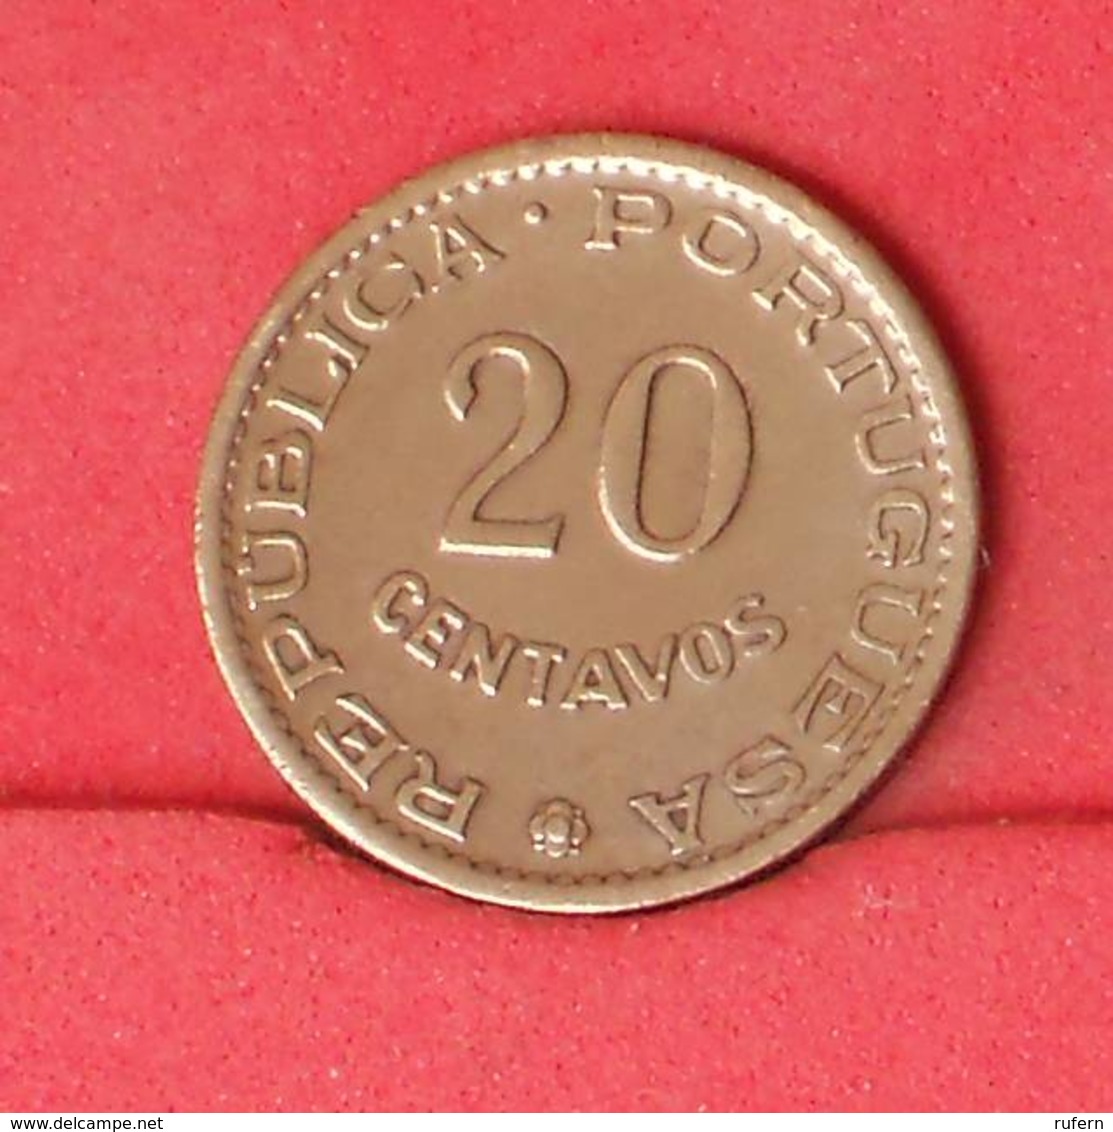 MOZAMBIQUE 20 CENTAVOS 1961 -    KM# 85 - (Nº25771) - Mozambique